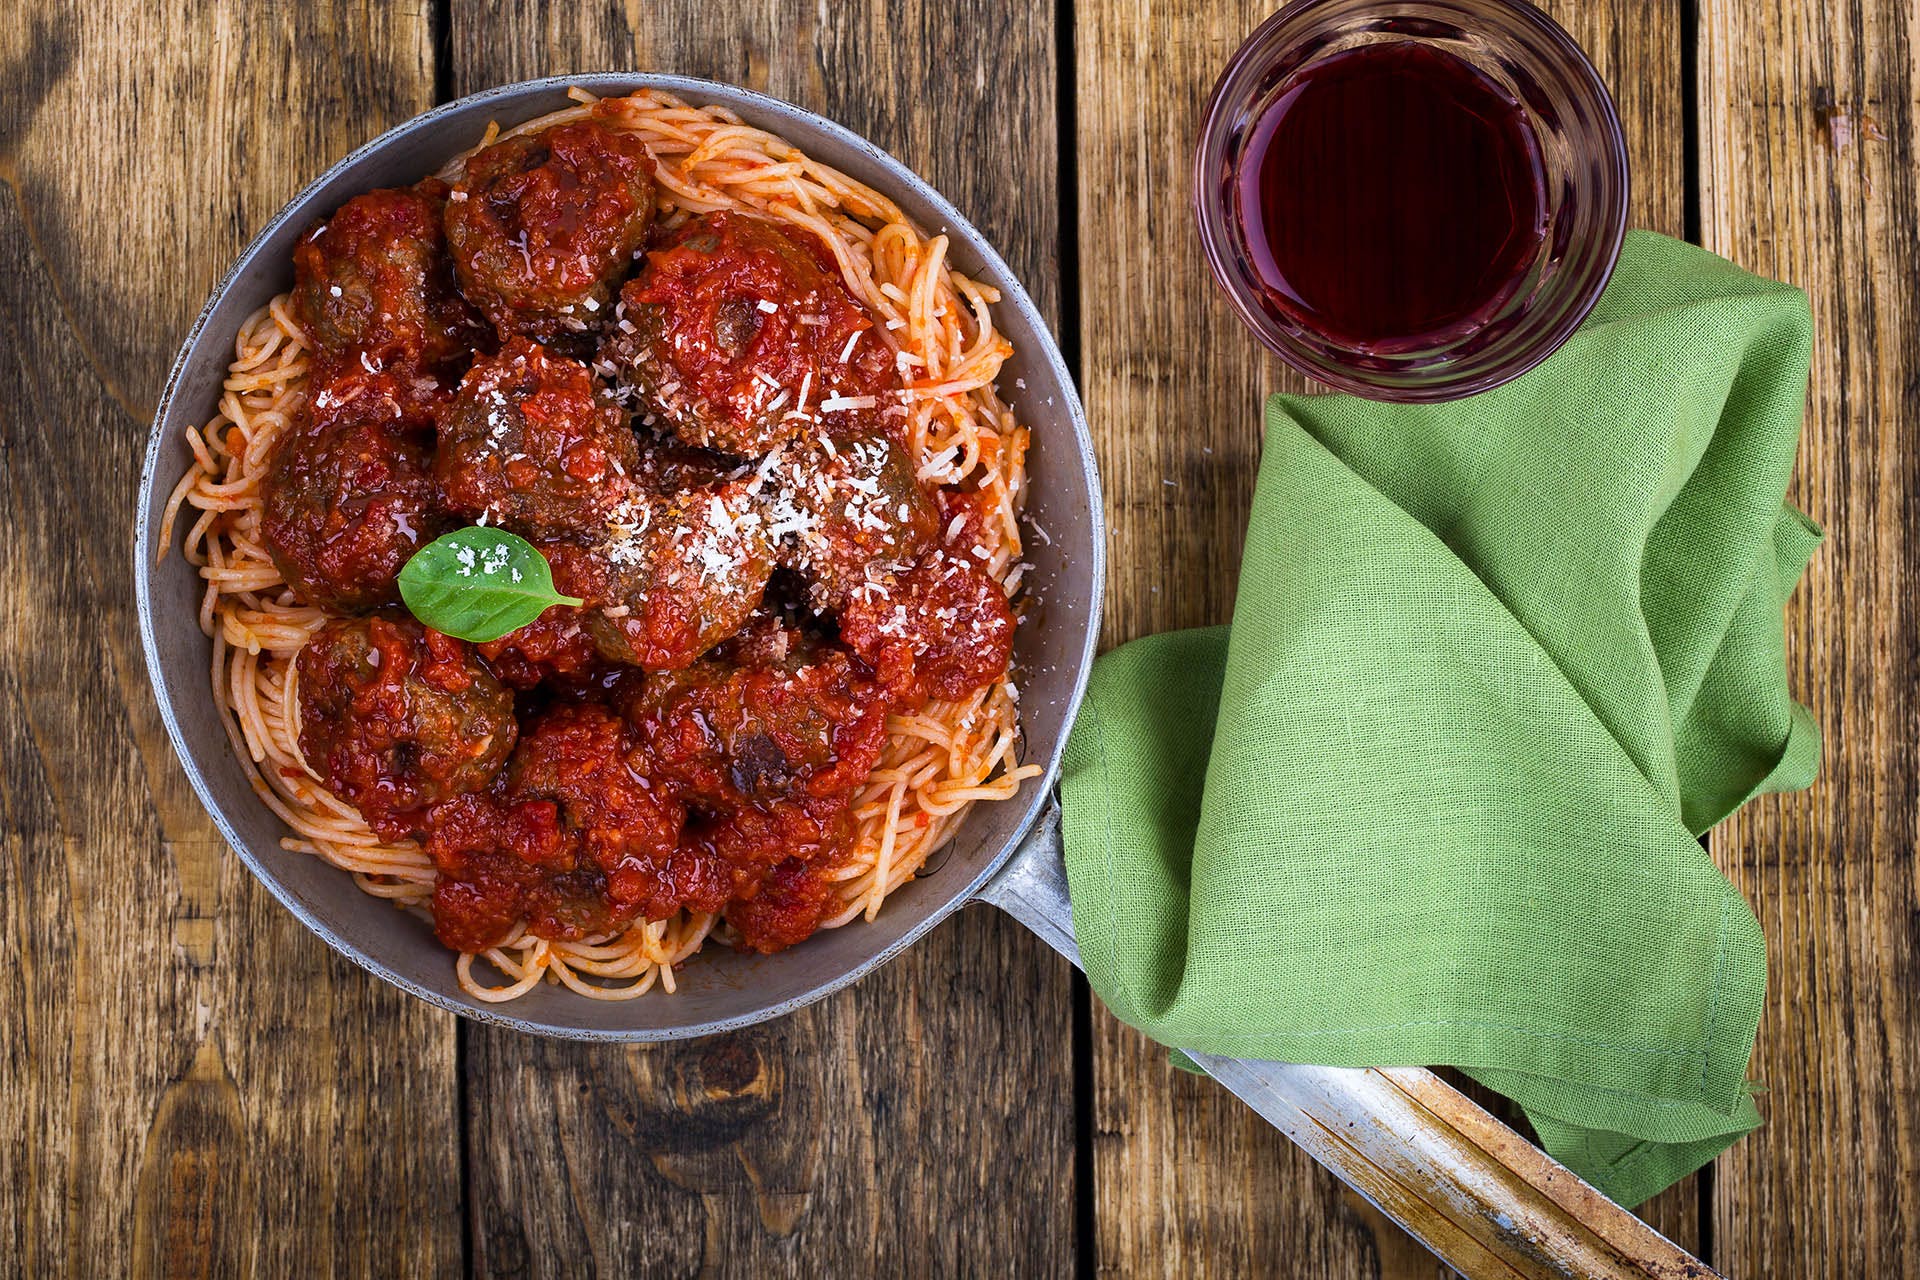 Spaghetti and meatballs soul food